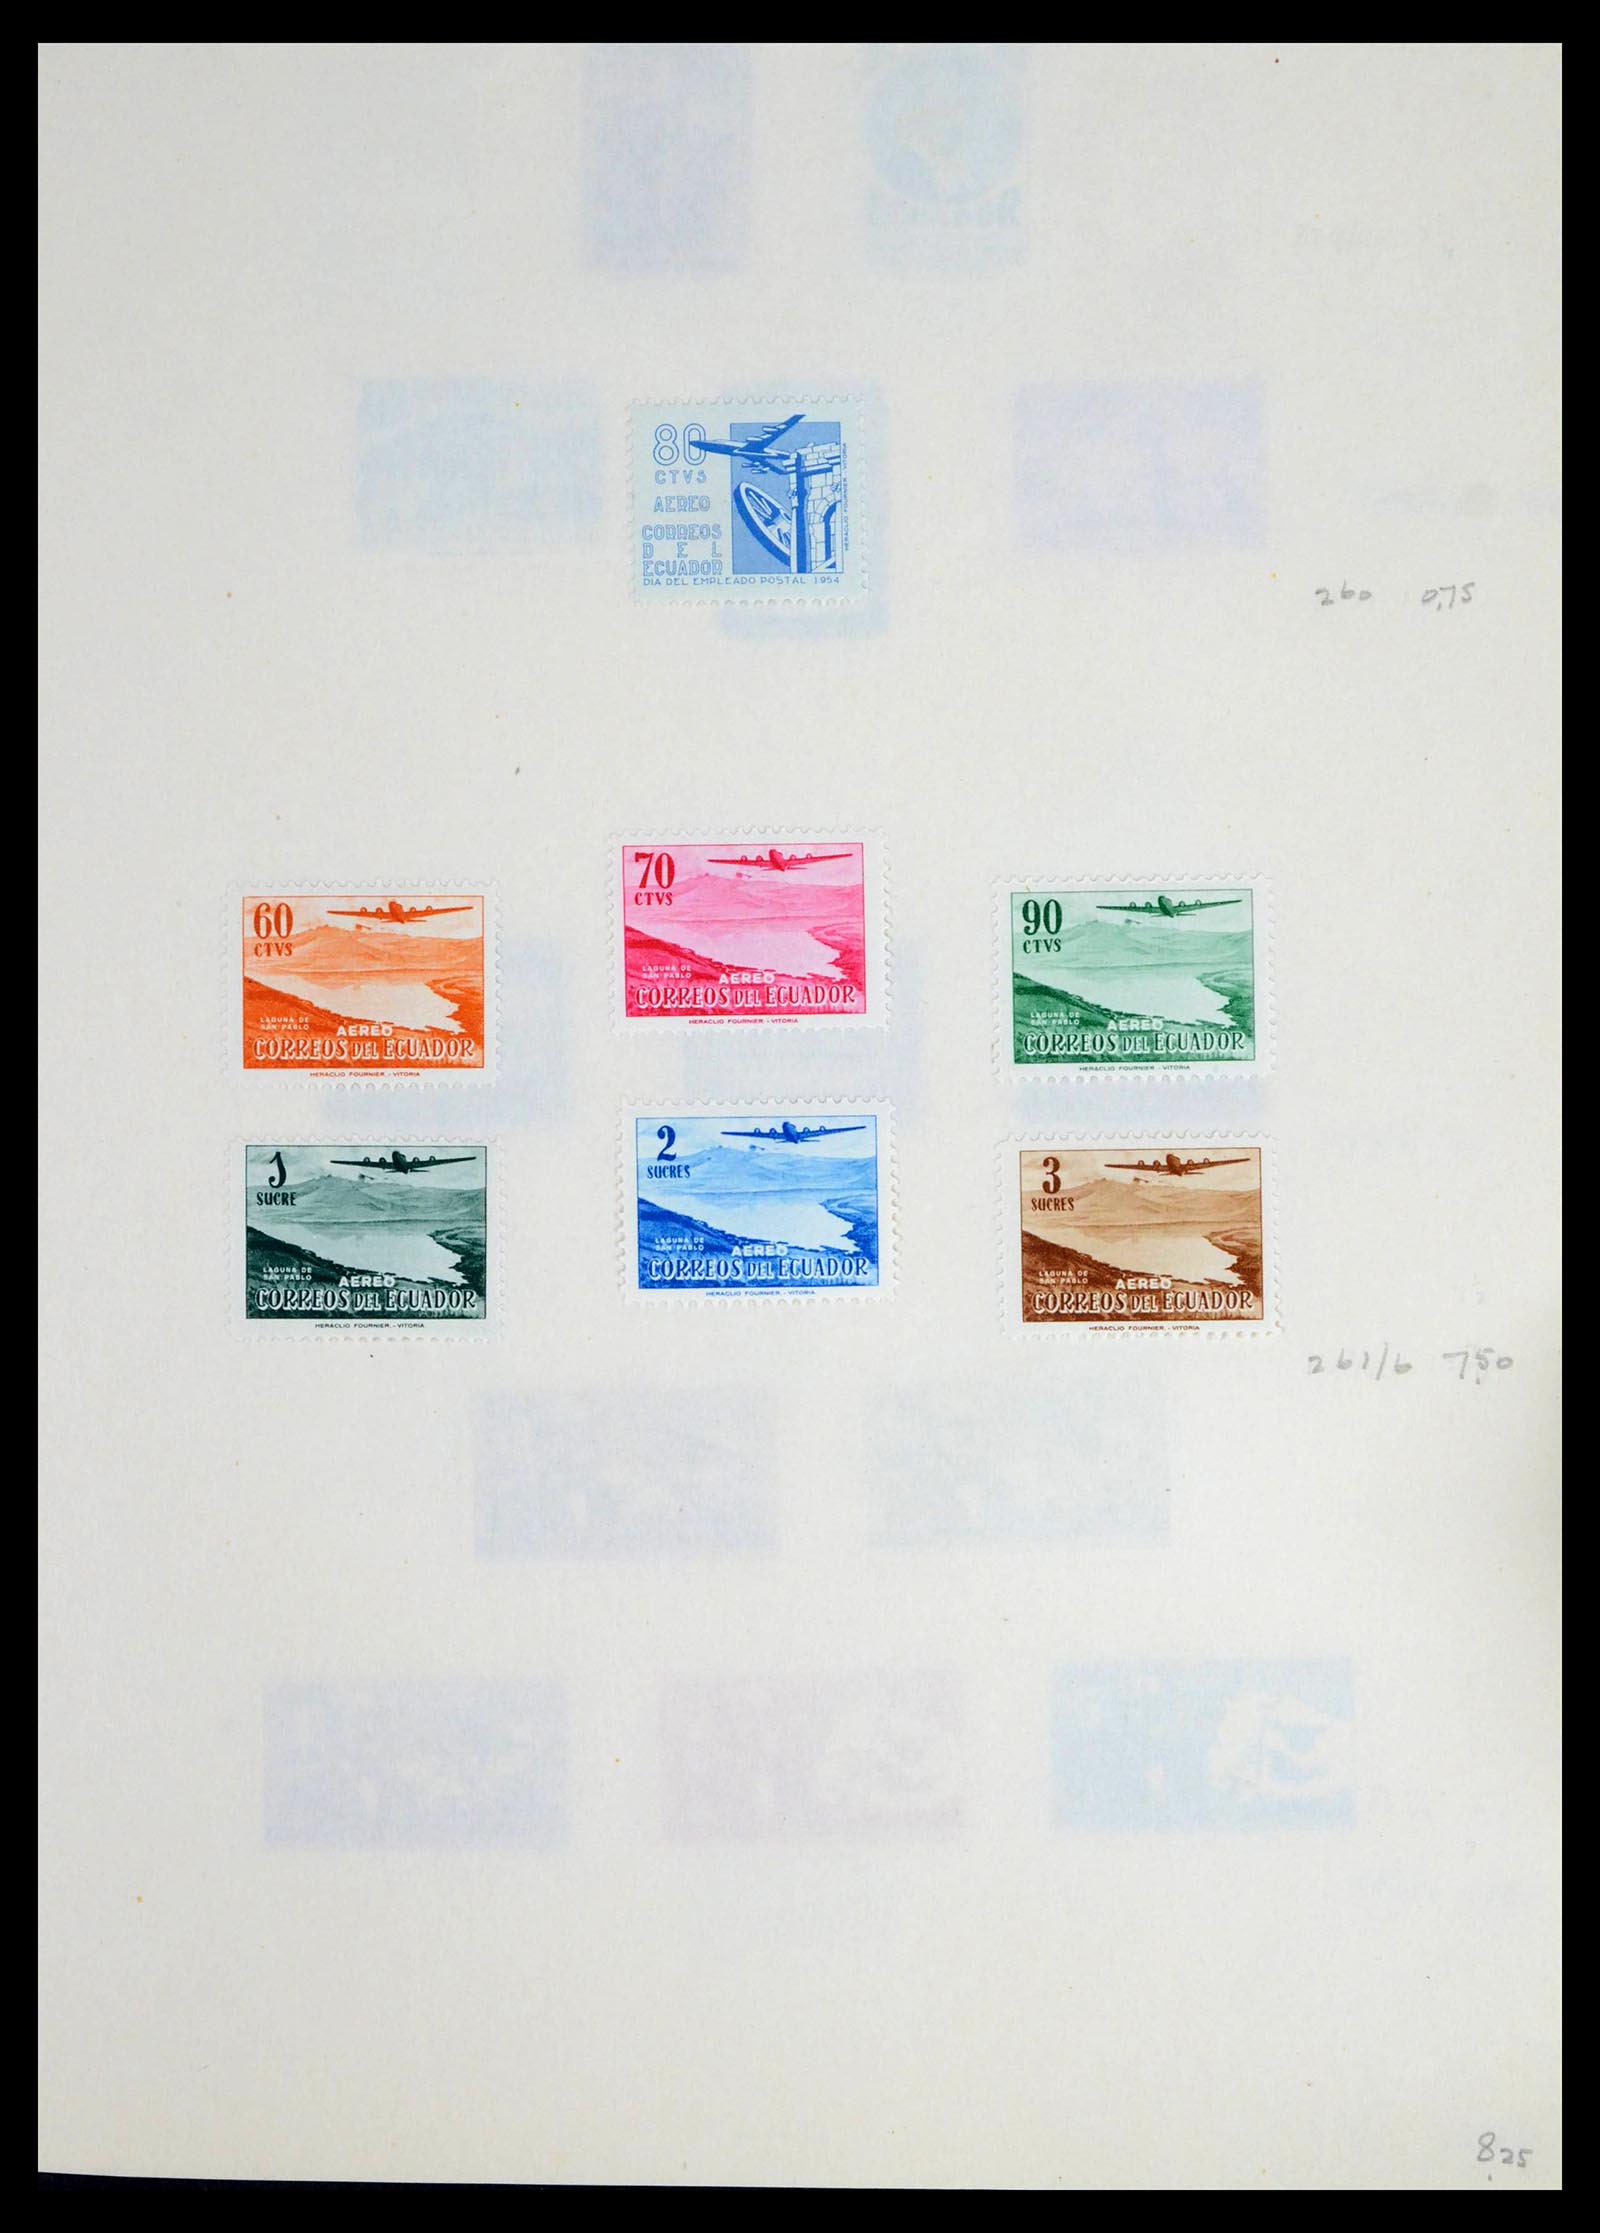 39456 0021 - Stamp collection 39456 Ecuador 1865-1960.